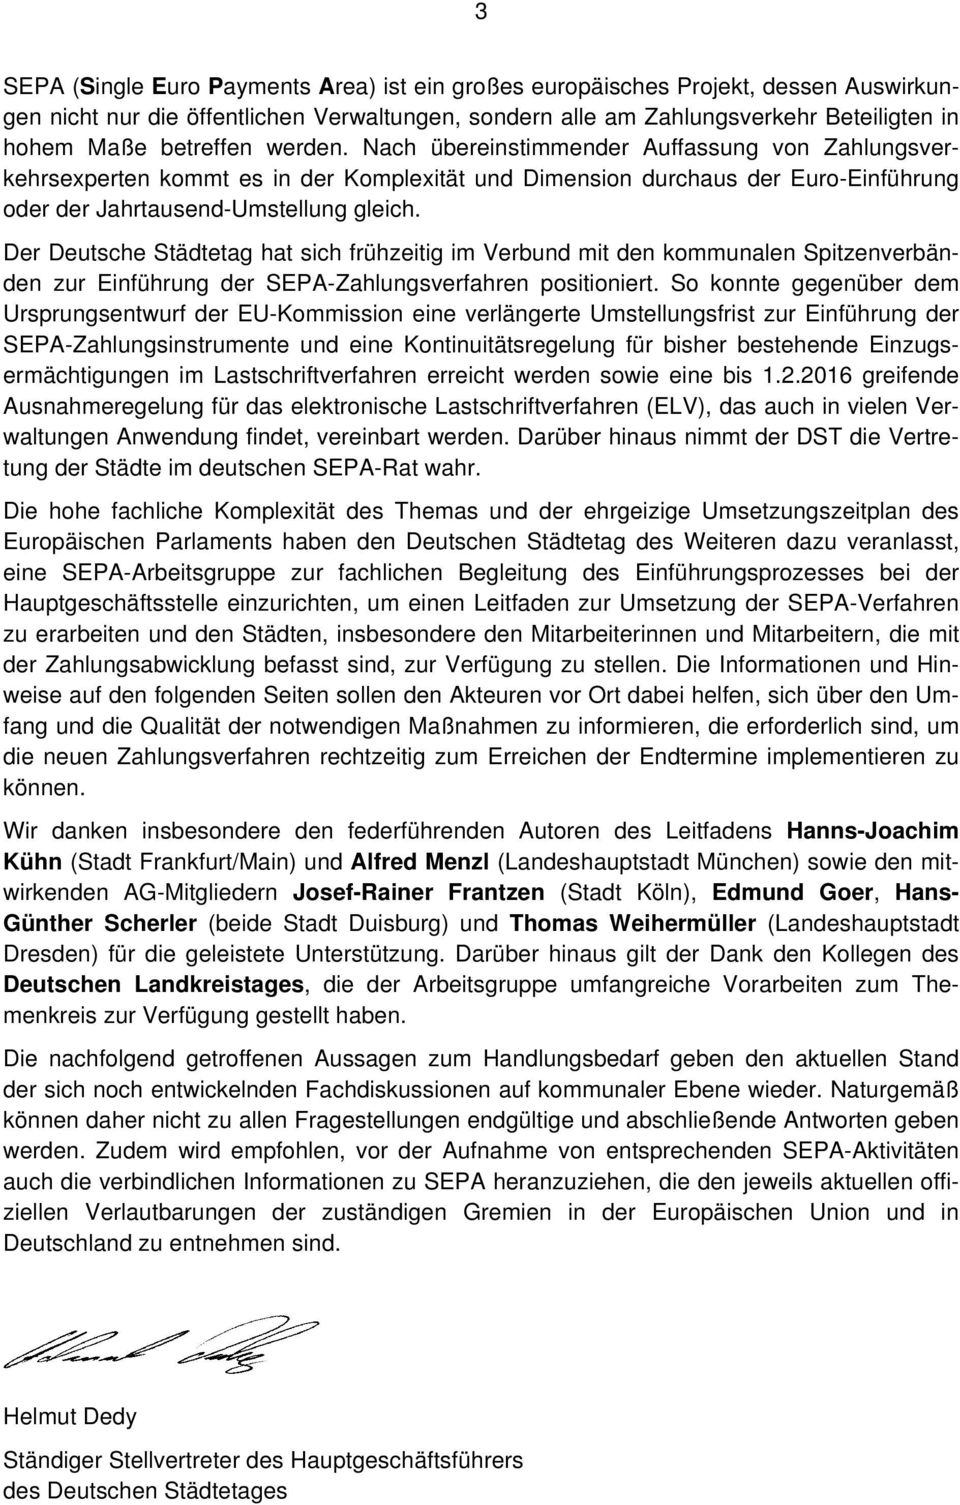 Der Deutsche Städtetag hat sich frühzeitig im Verbund mit den kommunalen Spitzenverbänden zur Einführung der SEPA-Zahlungsverfahren positioniert.